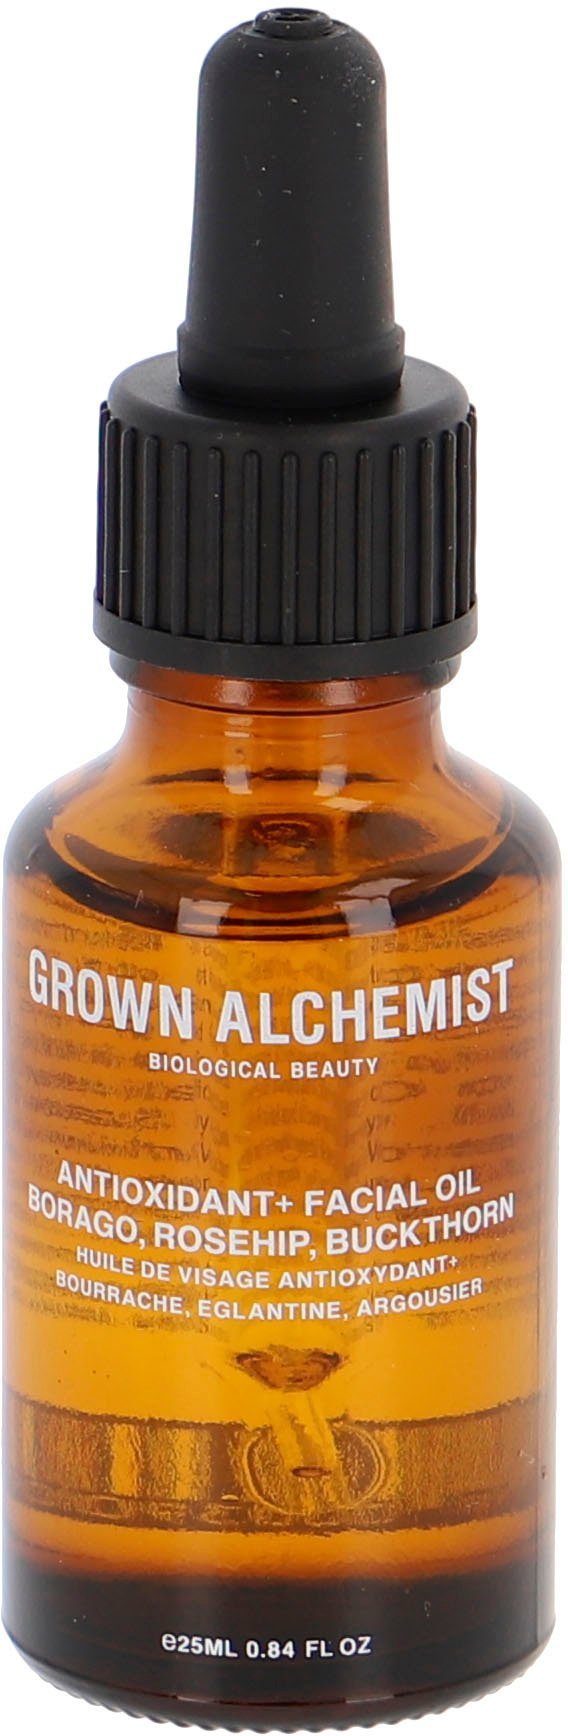 GROWN ALCHEMIST Gesichtsöl Anti-Oxidant+ Facial Oil, Borago, Rosehip, Buckthorn | Gesichtsöle